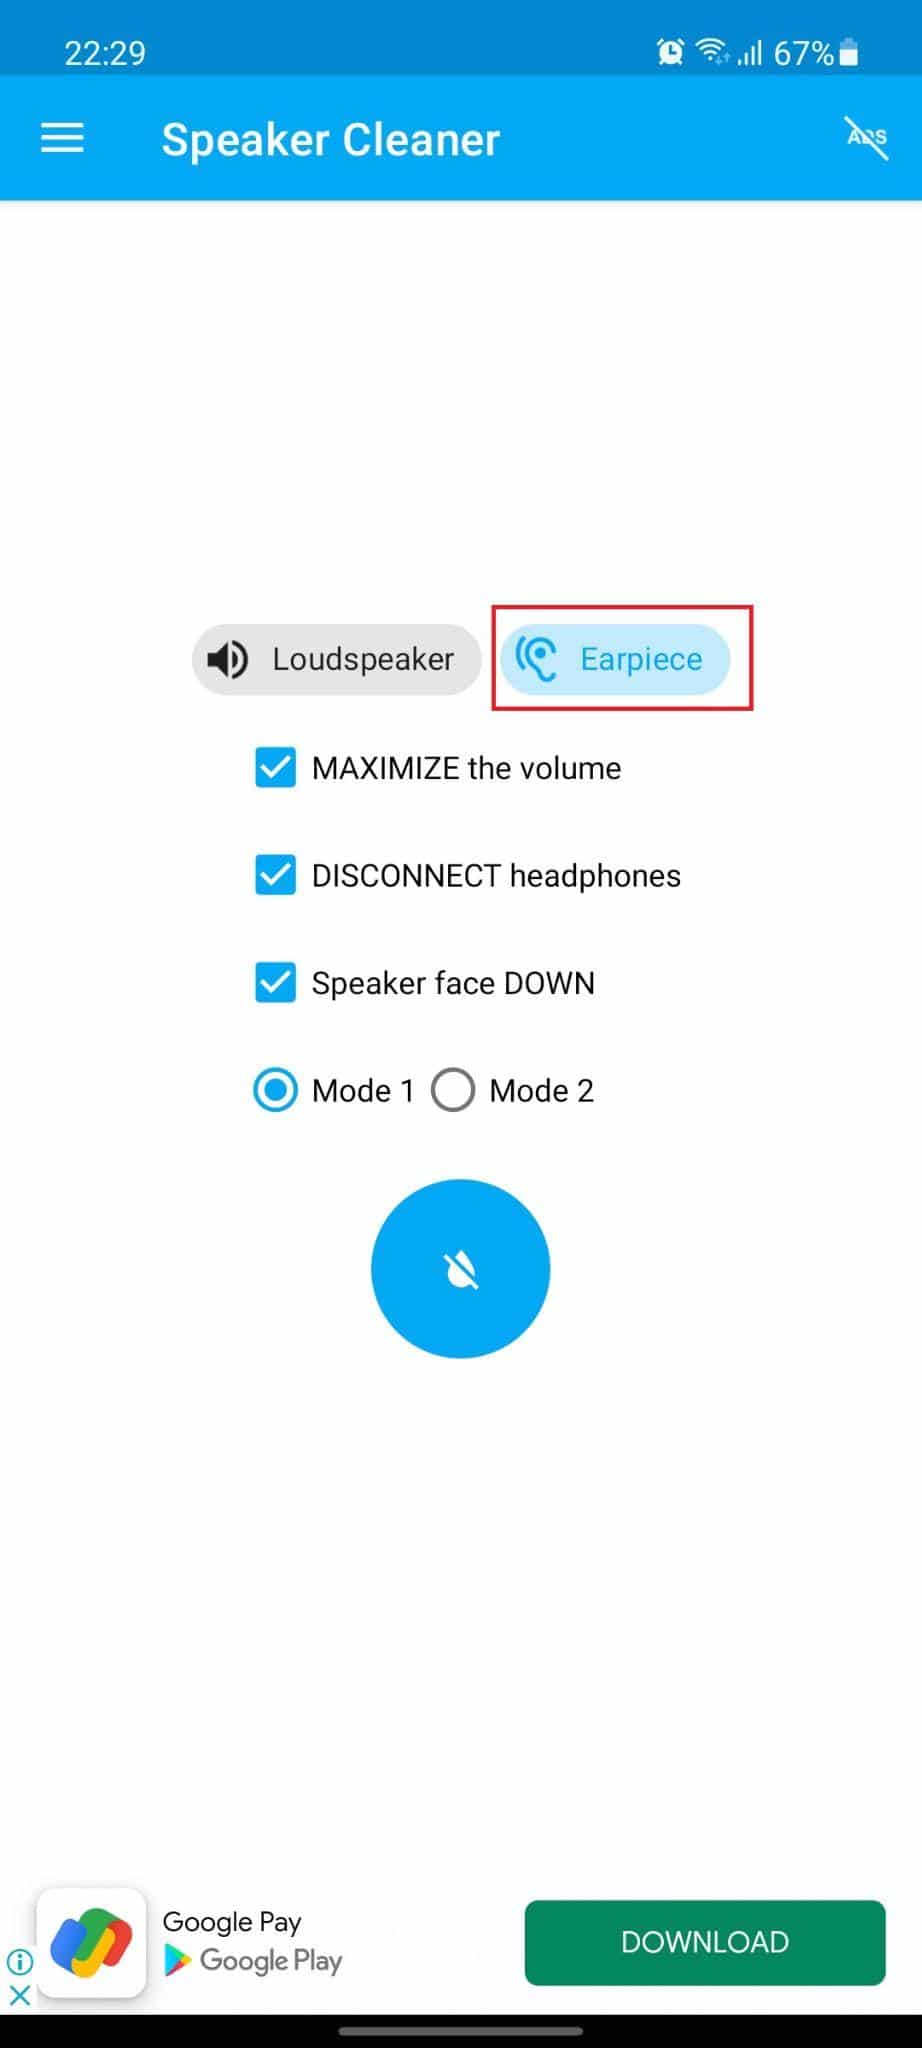 Aplicación súper limpiadora de parlantes. El modo auricular está resaltado. Cómo reparar daños por agua en el altavoz del teléfono